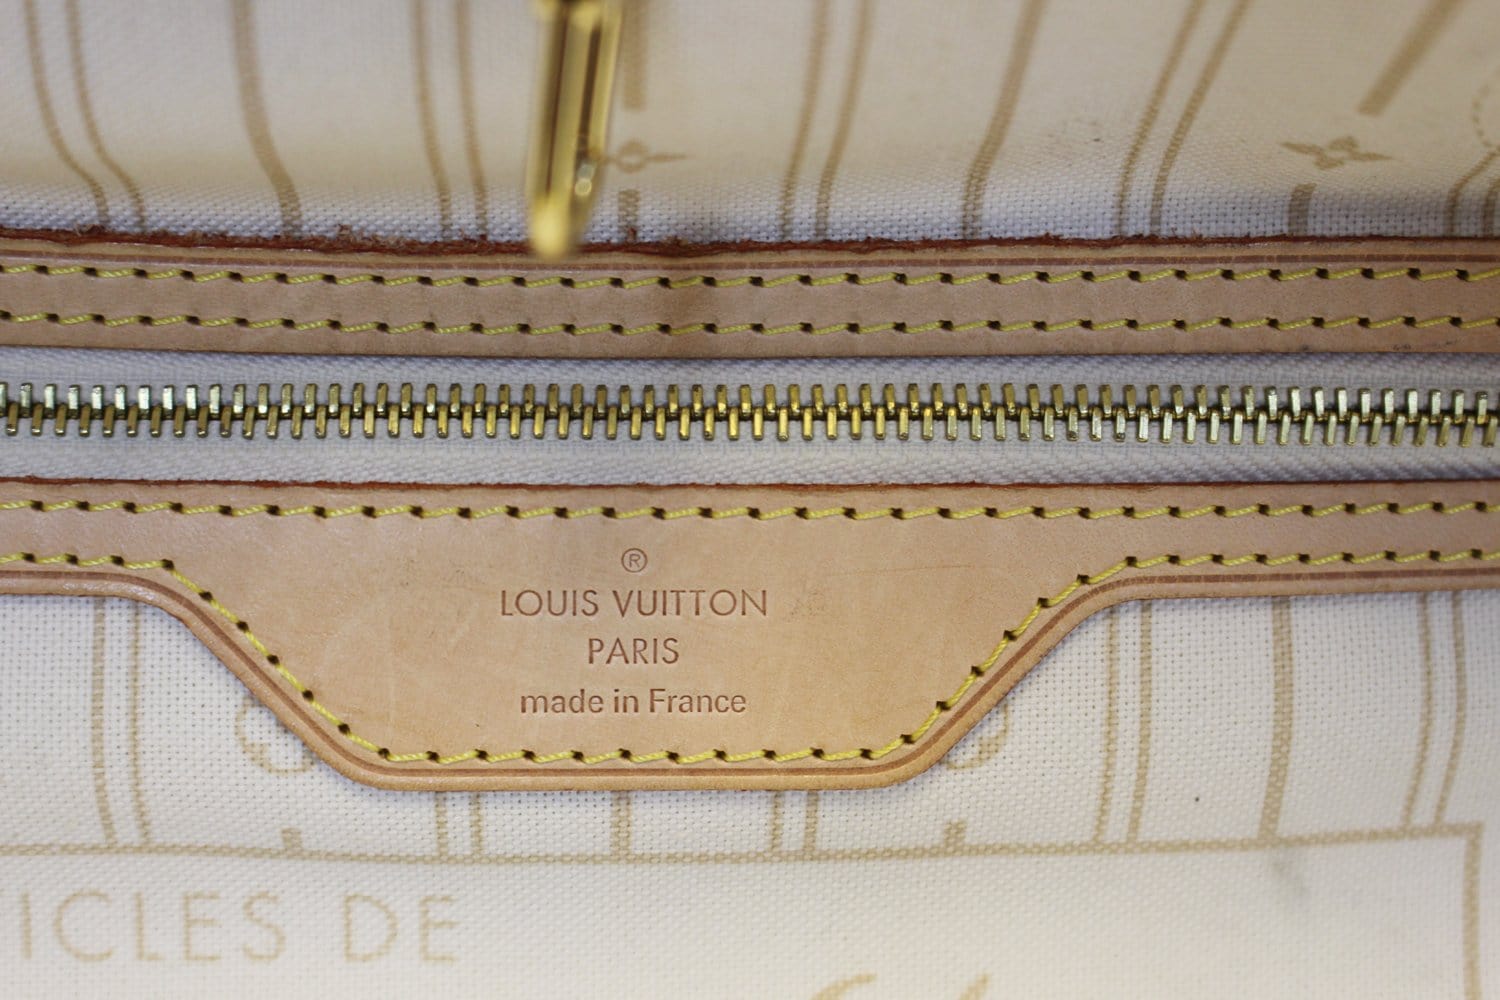 Louis Vuitton Damier Azur Neverfull PM w/ Pouch - Neutrals Totes, Handbags  - LOU776180